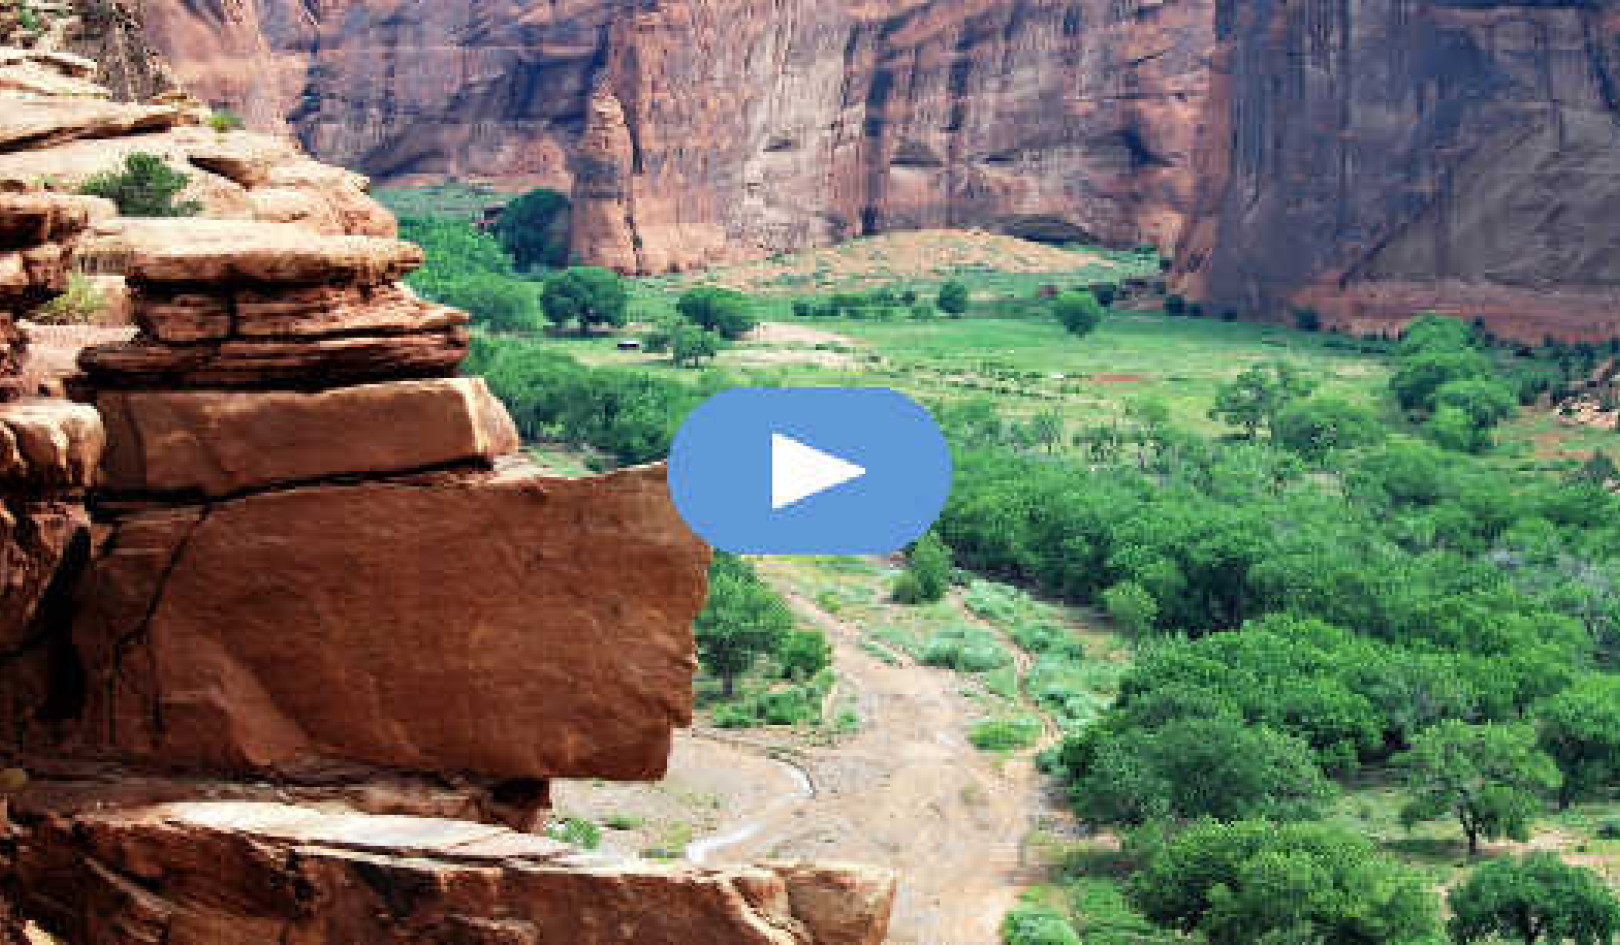 Canyon de Chelly'deki Dağ Aslanı Deneyimim: Kabus mu yoksa Ruh Rehberi mi? (Video)